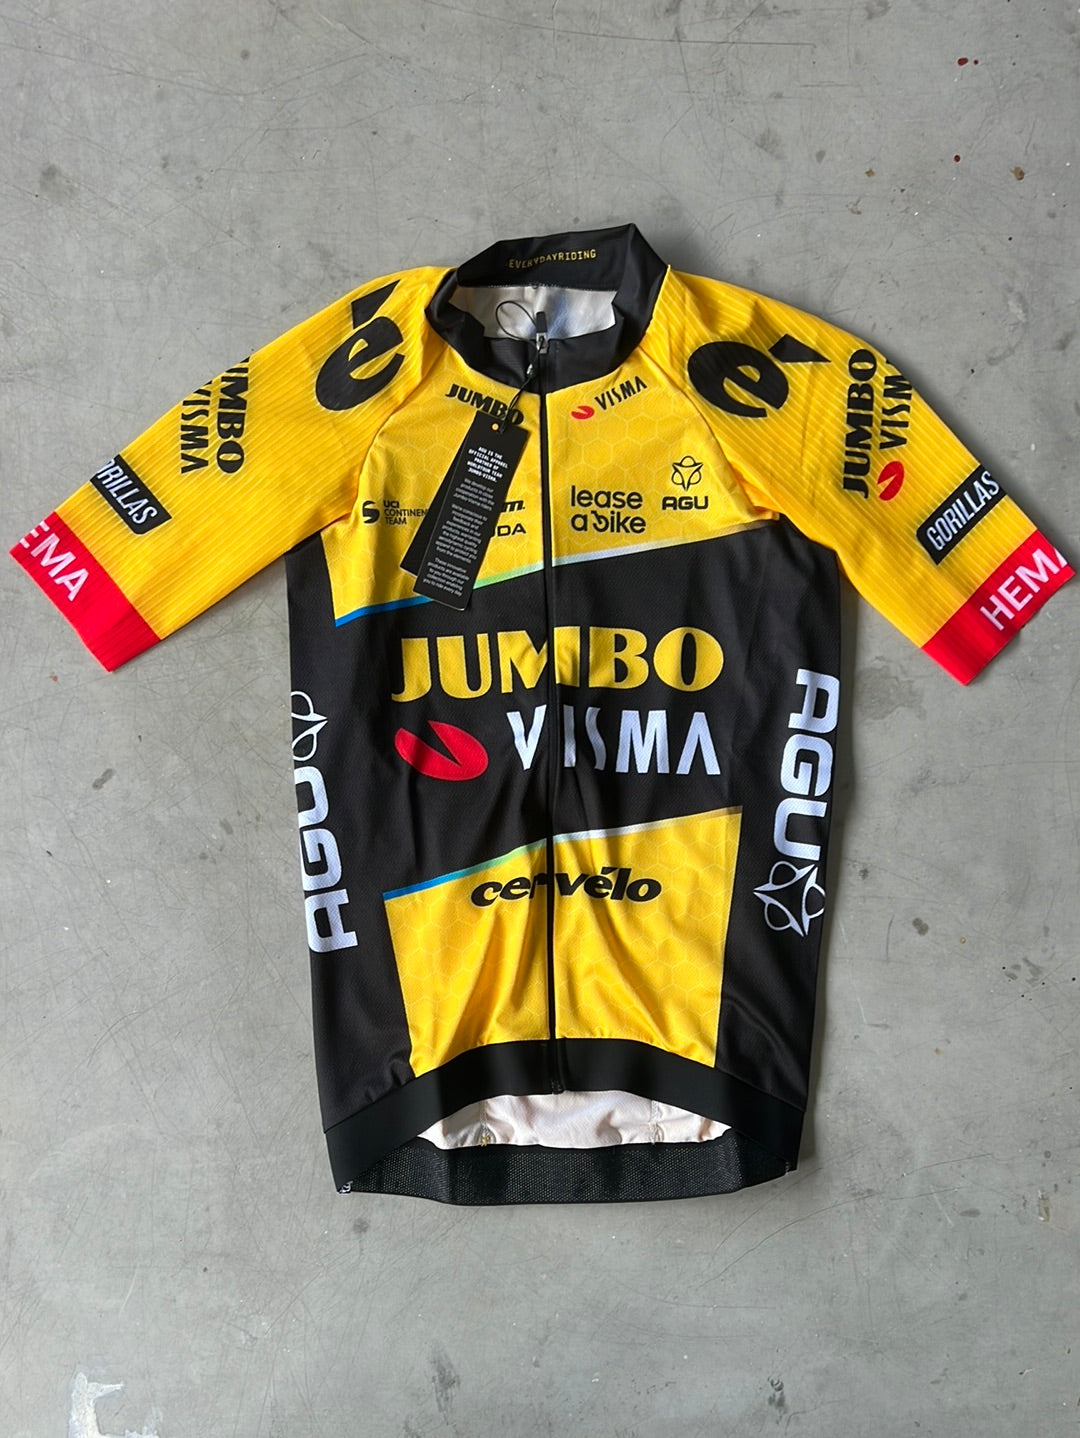 Aero Jersey | Agu | Jumbo Visma | Pro-Issued Cycling Kit